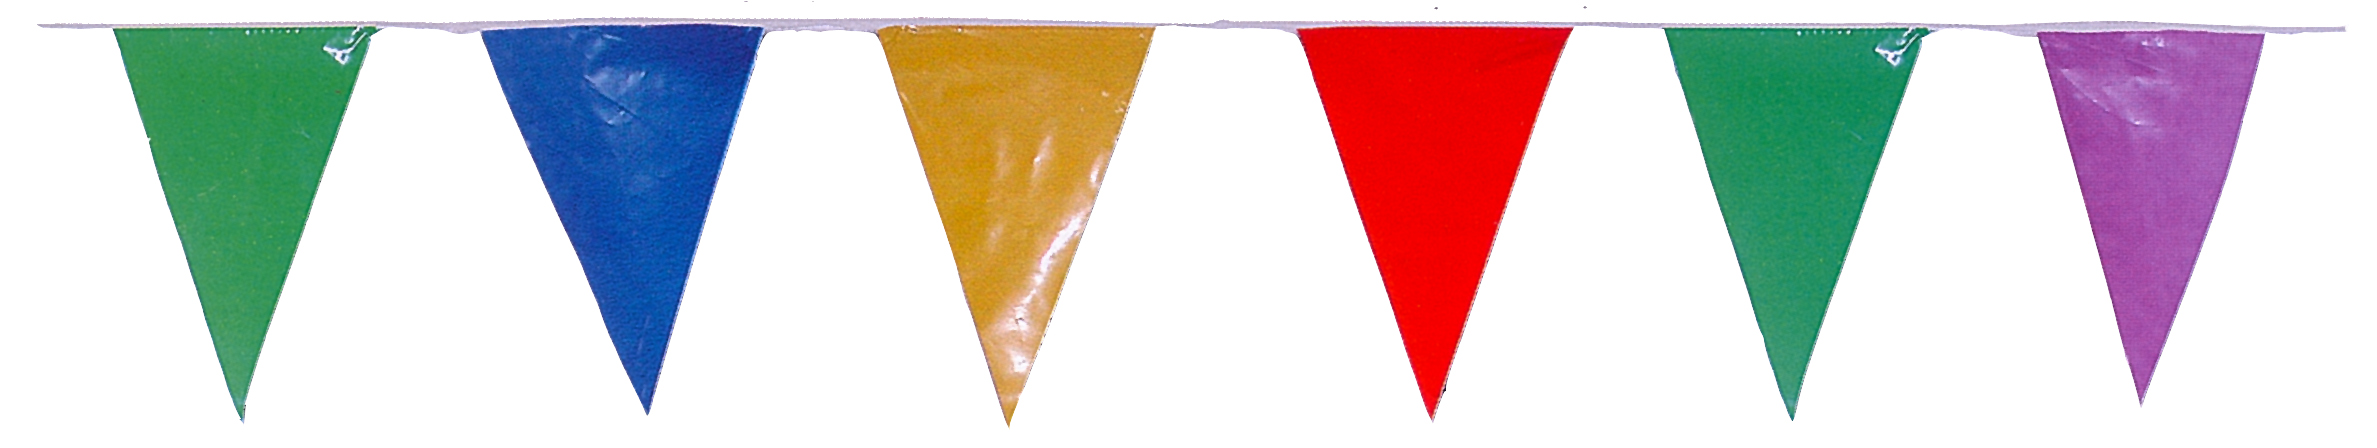 banderas triangulares para fiestas